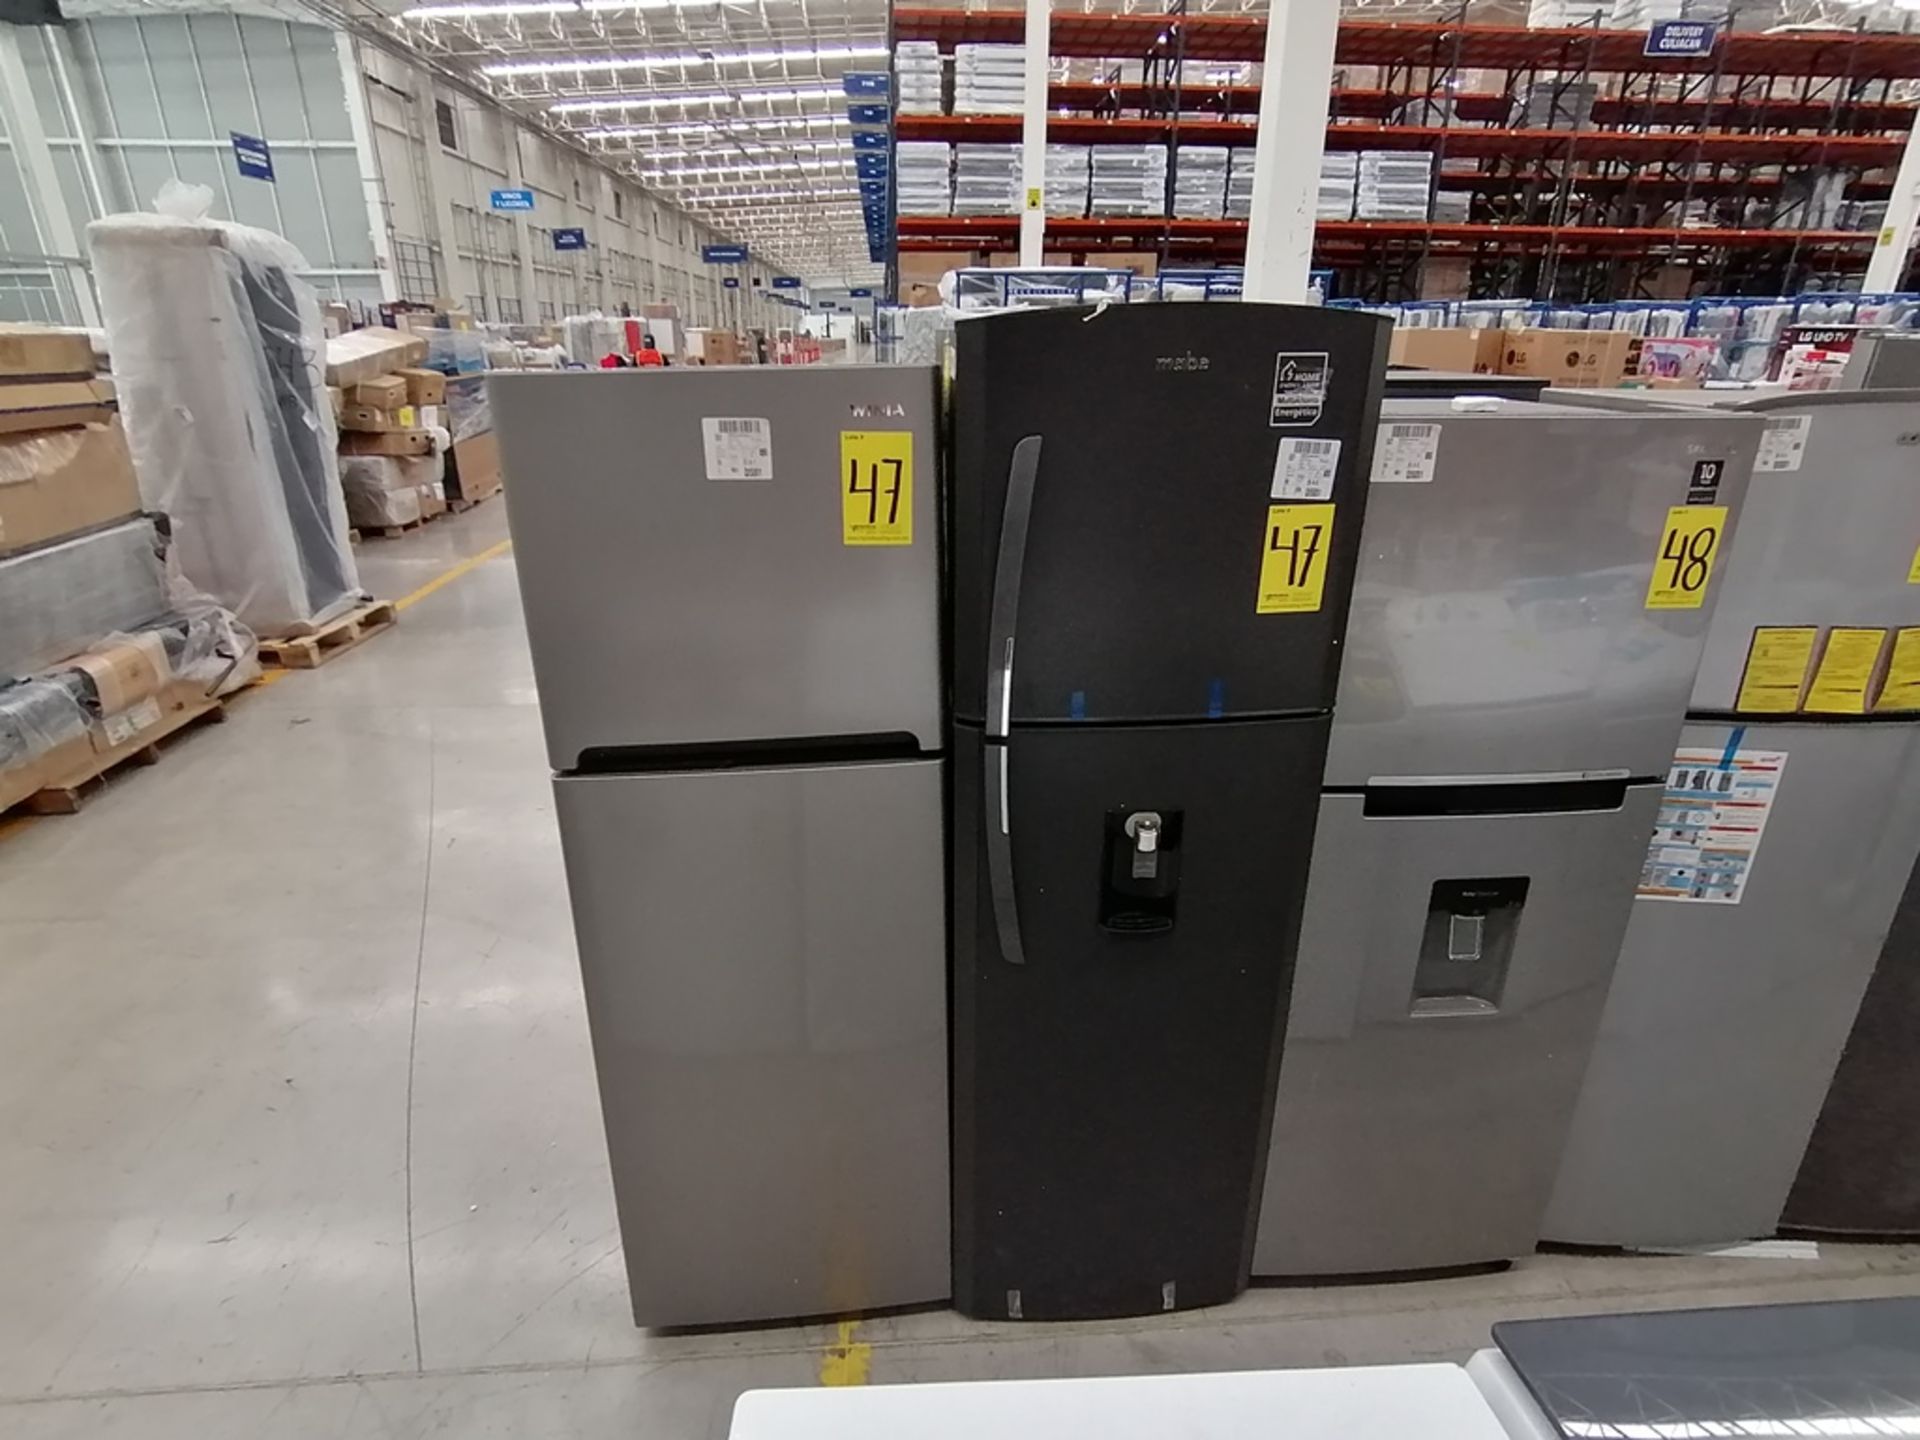 Lote de 2 refrigeradores incluye: 1 Refrigerador, Marca Winia, Modelo DFR32210GNV, Serie MR219N1206 - Image 10 of 15